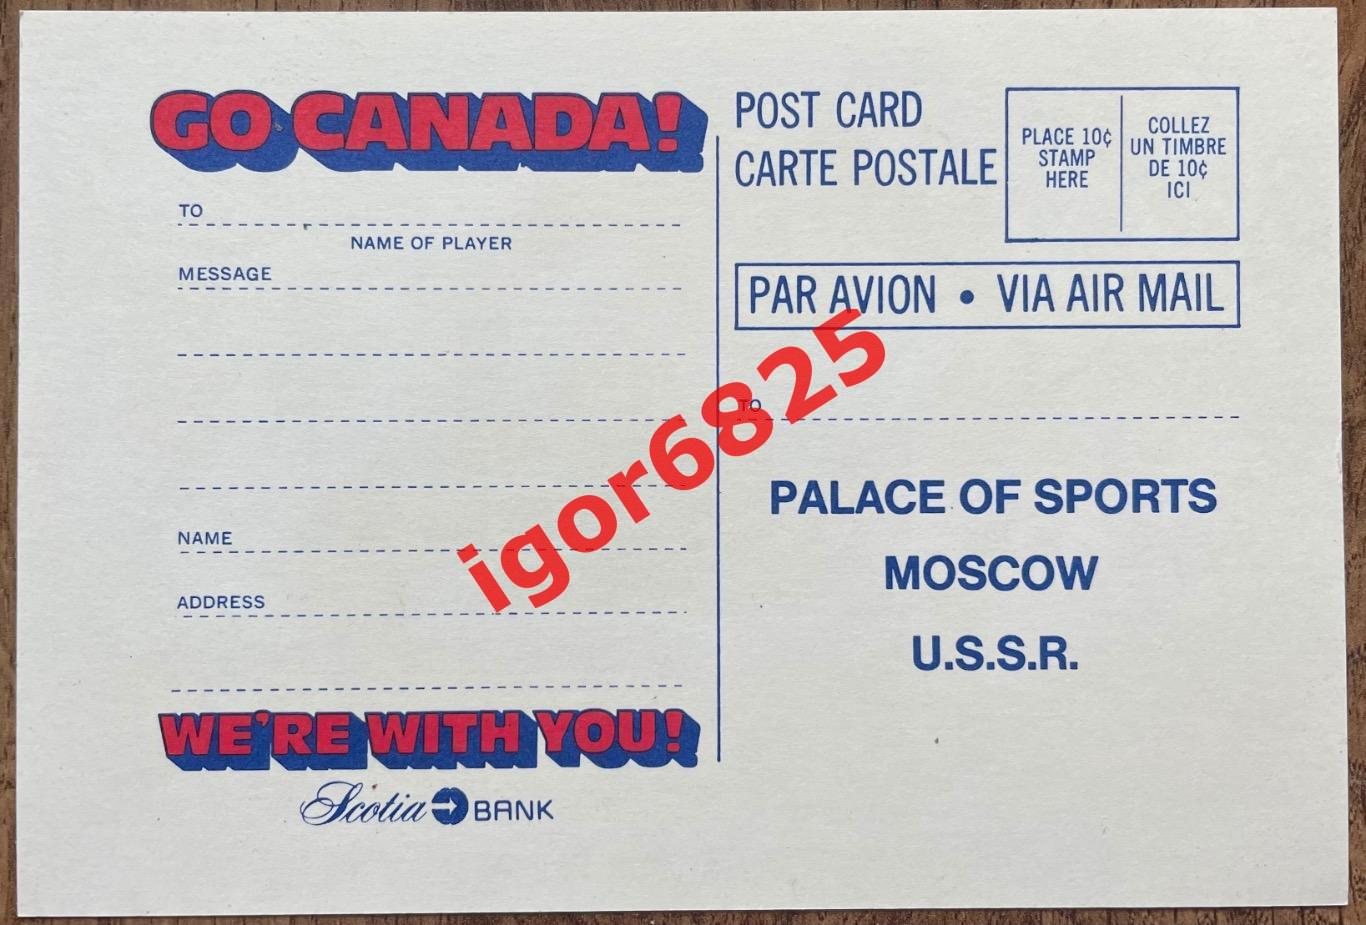 Хоккей. Канада - СССР (GO CANADA - USSR) Суперсерия 1972. Почтовая открытка. 1